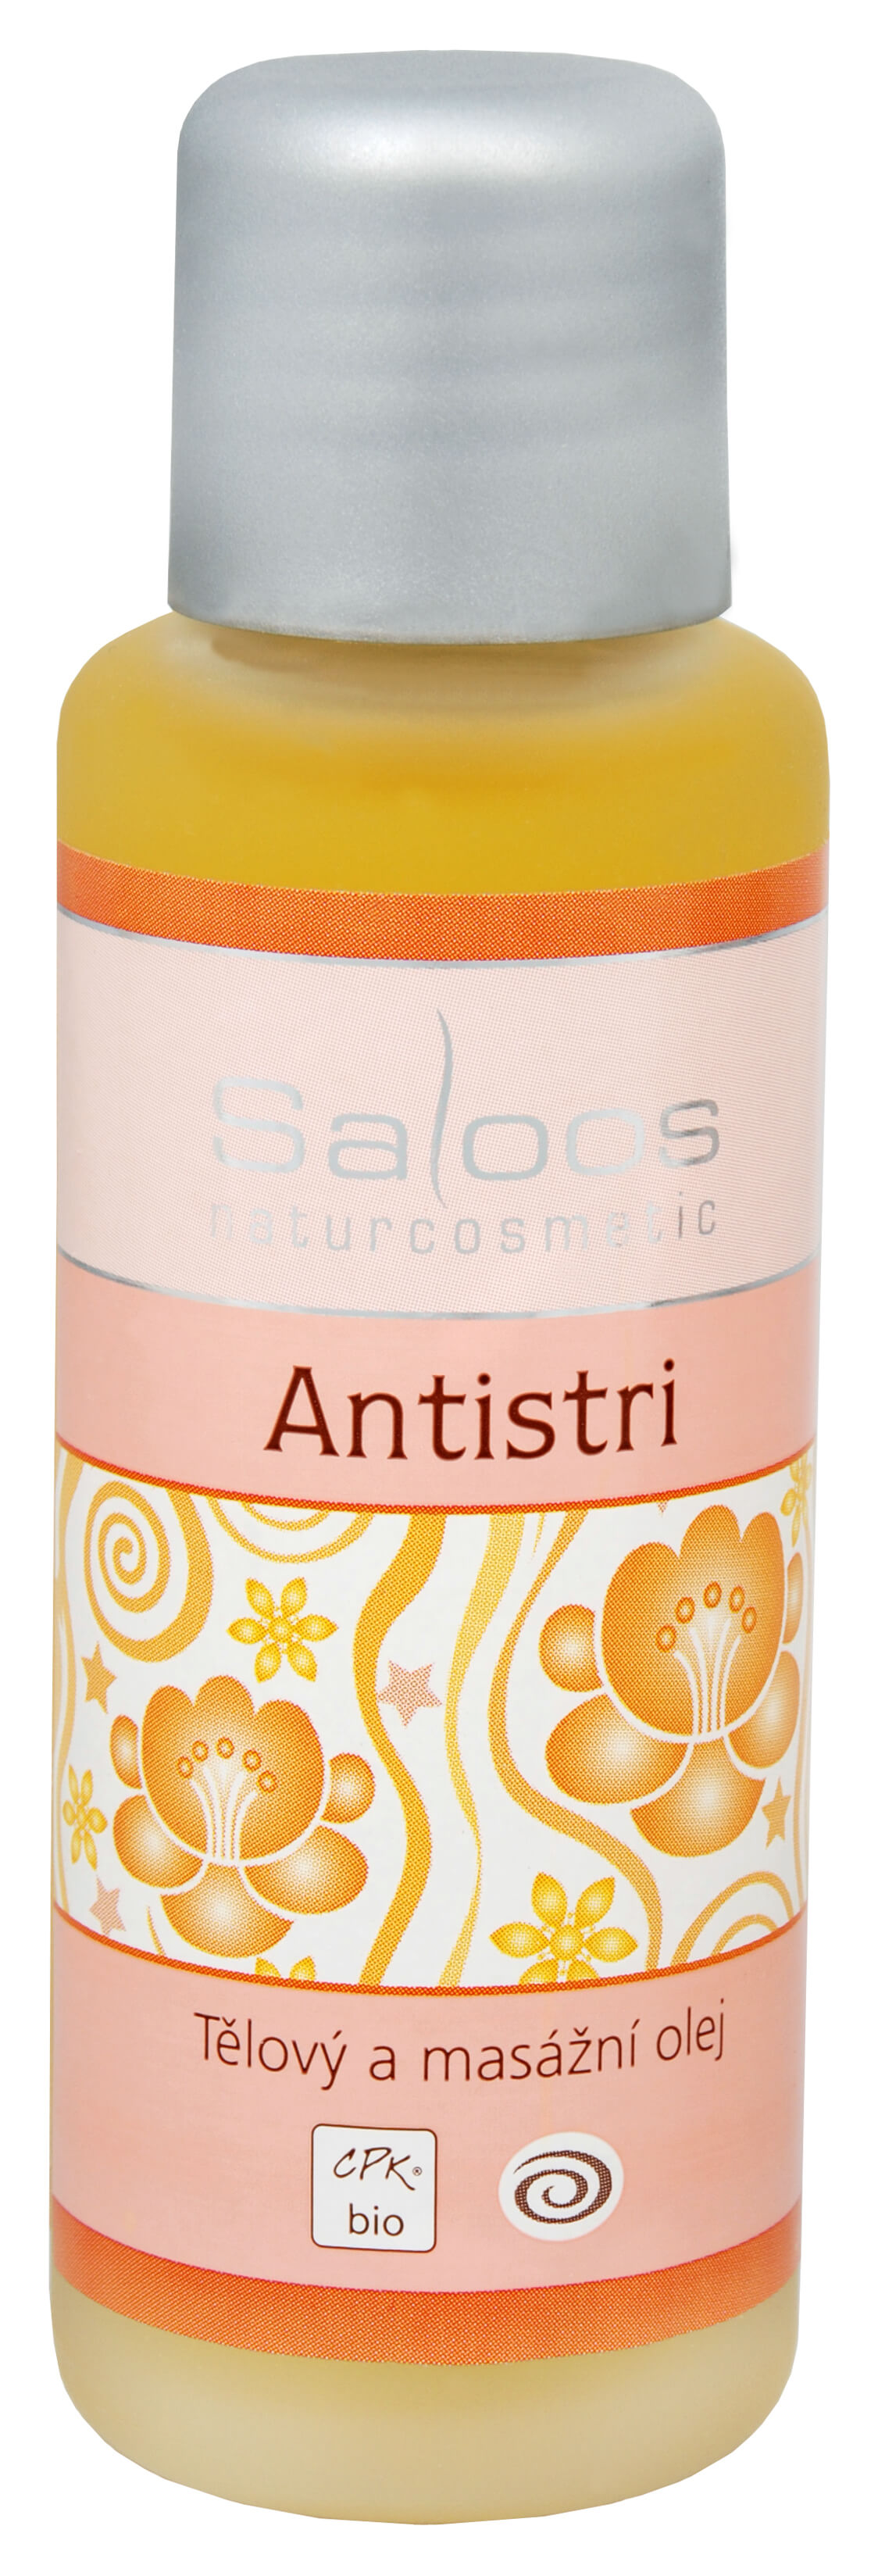 Zobrazit detail výrobku Saloos Bio tělový a masážní olej - Antistri 250 ml